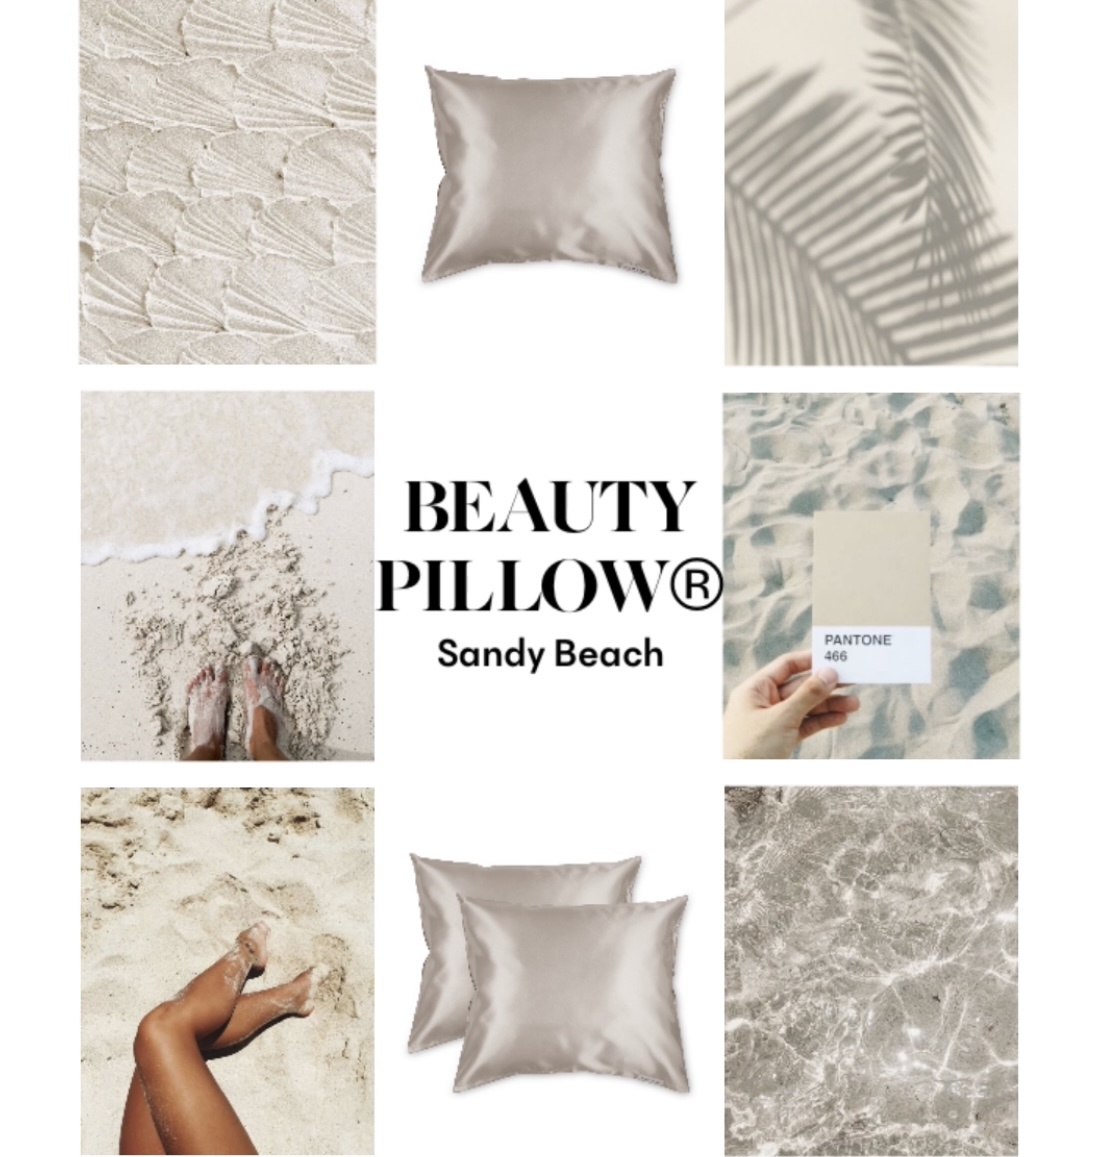 Alles over de nieuwe zomer collectie van Beauty Pillow